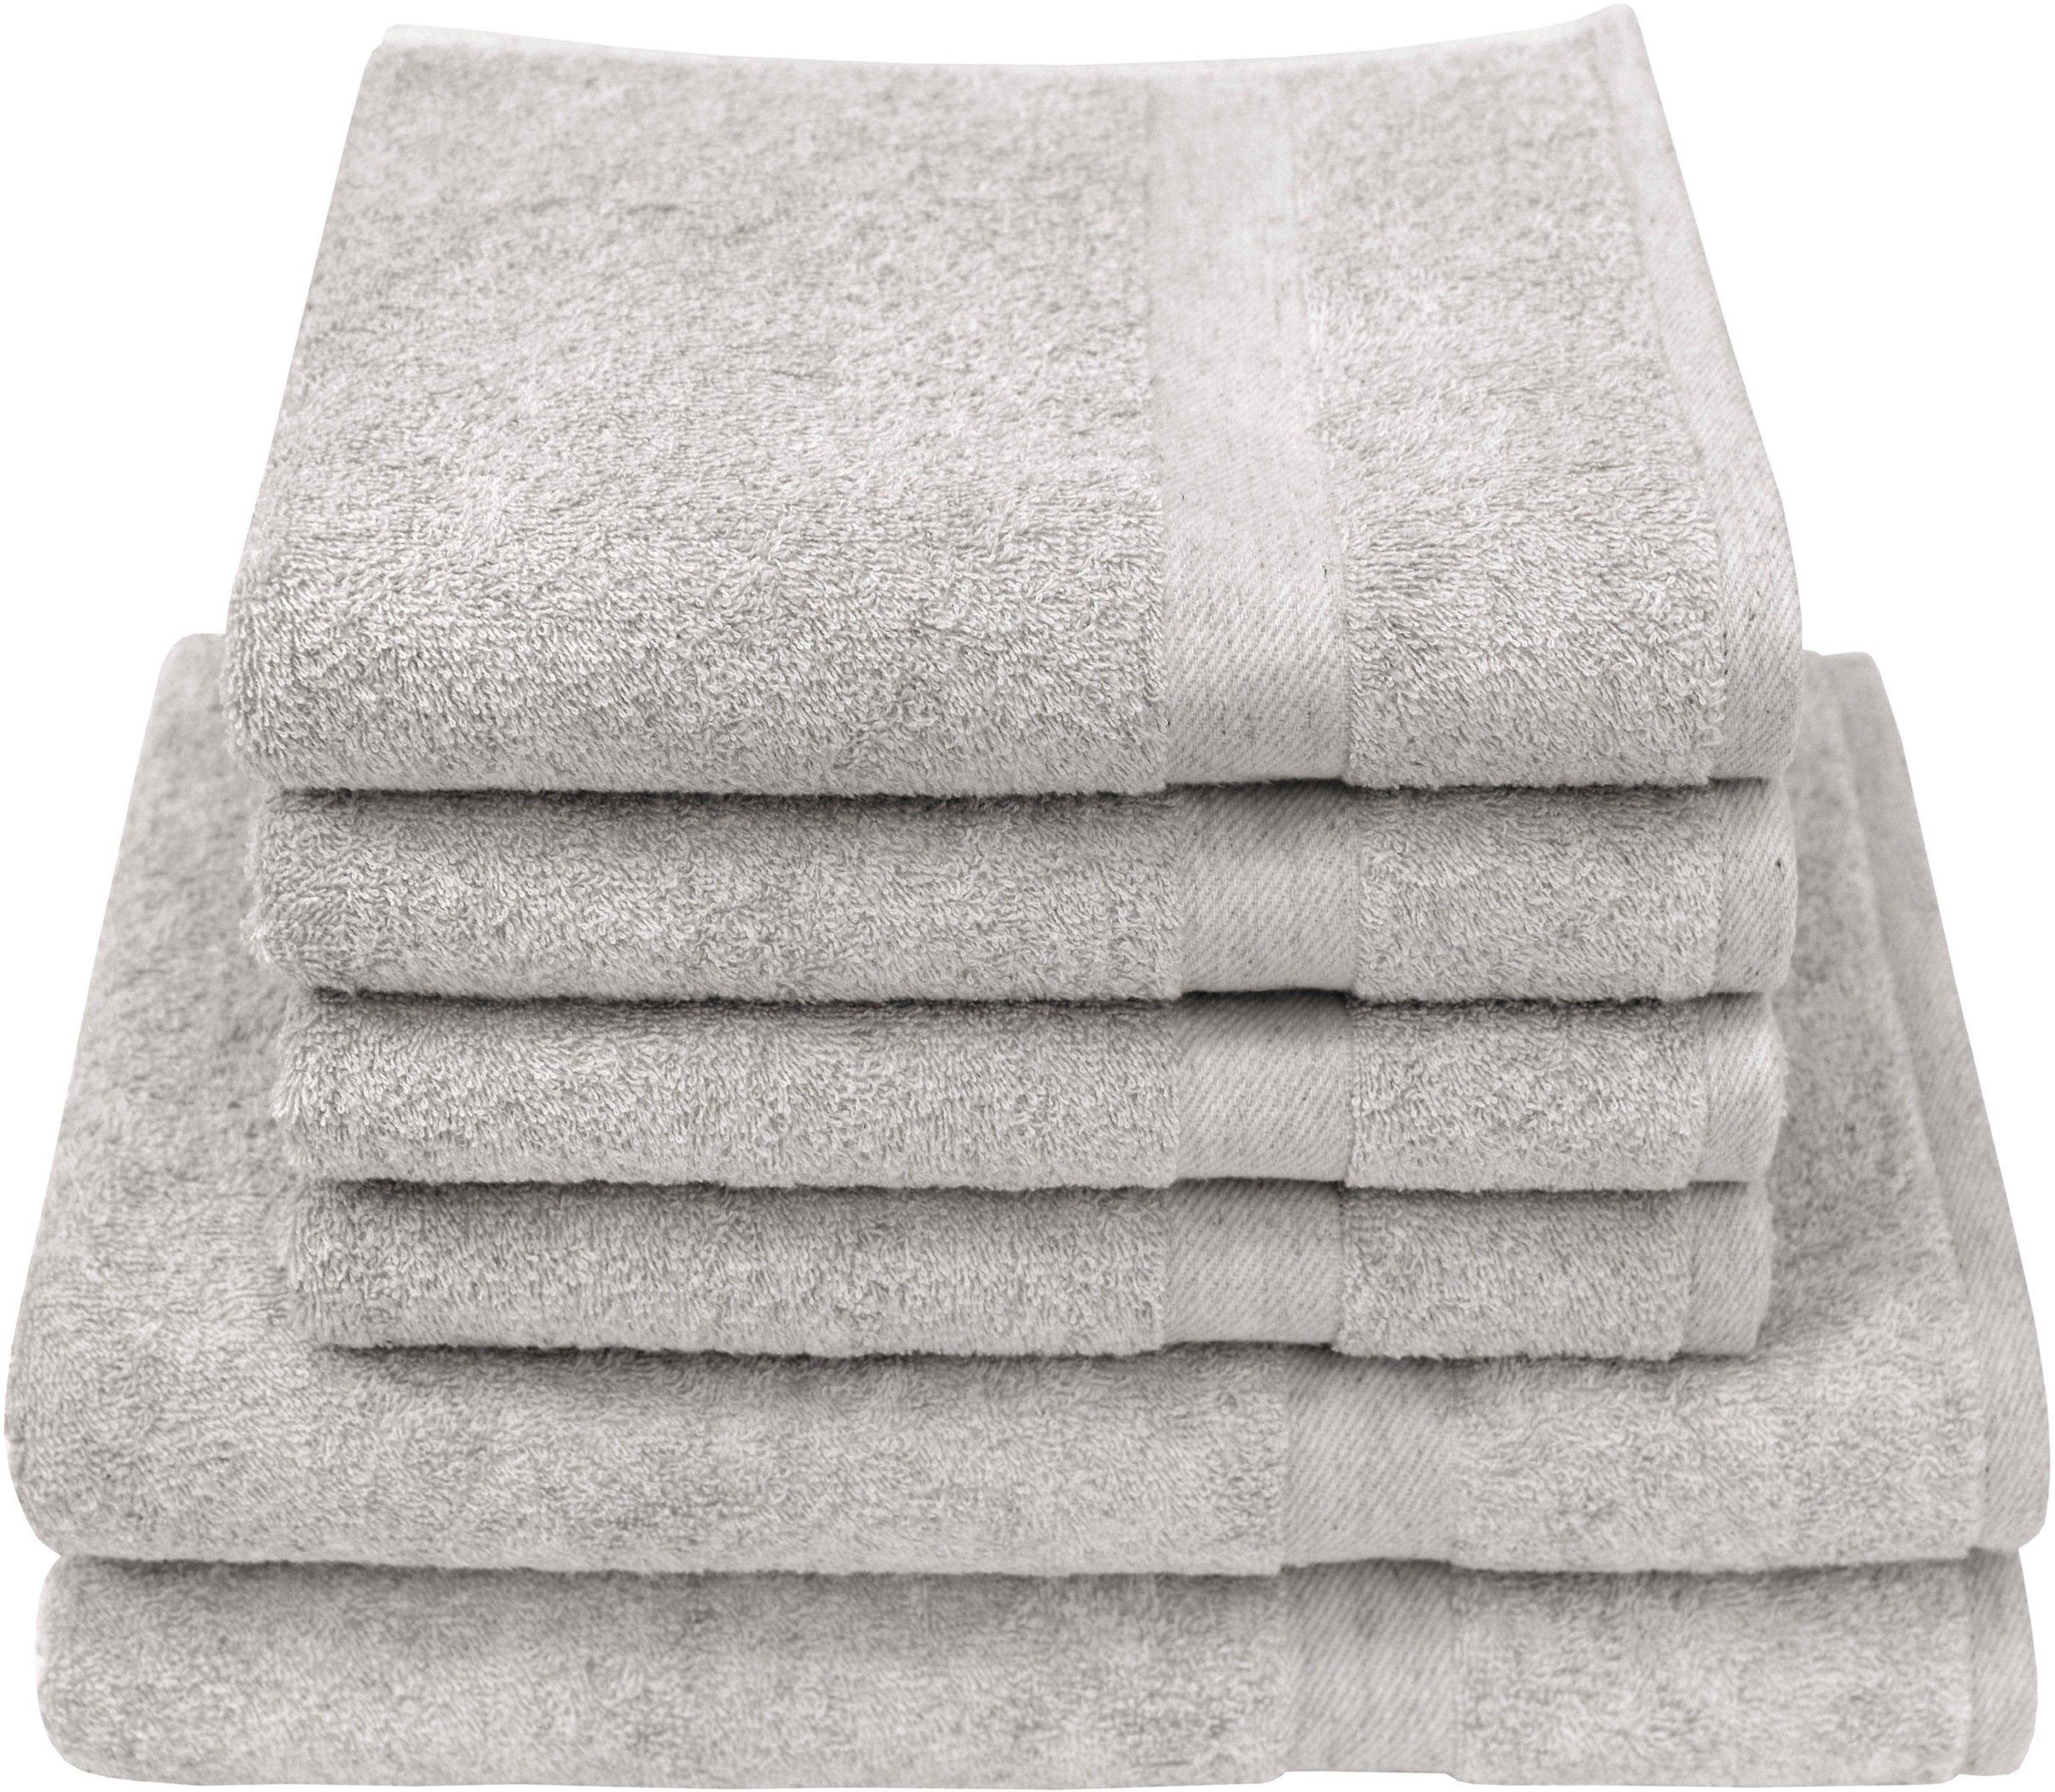 Handtuchsets aus Baumwolle Preisvergleich 24 Moebel 